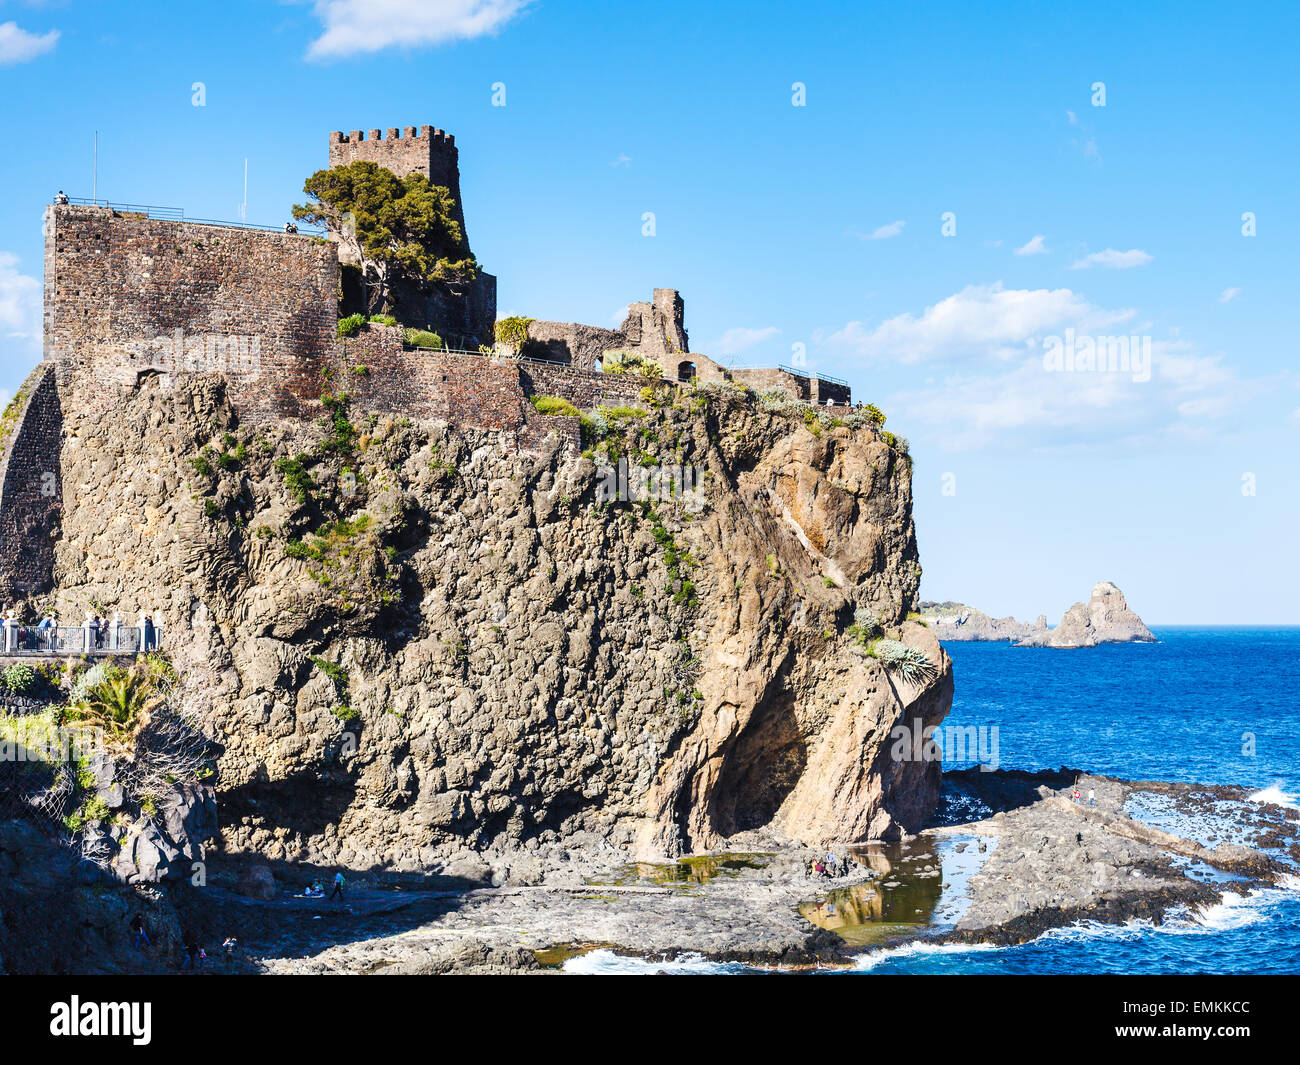 Castello normanno di Aci Castello Village e rocce ciclopiche (Isole dei Ciclopi), Sicilia, Italia Foto Stock